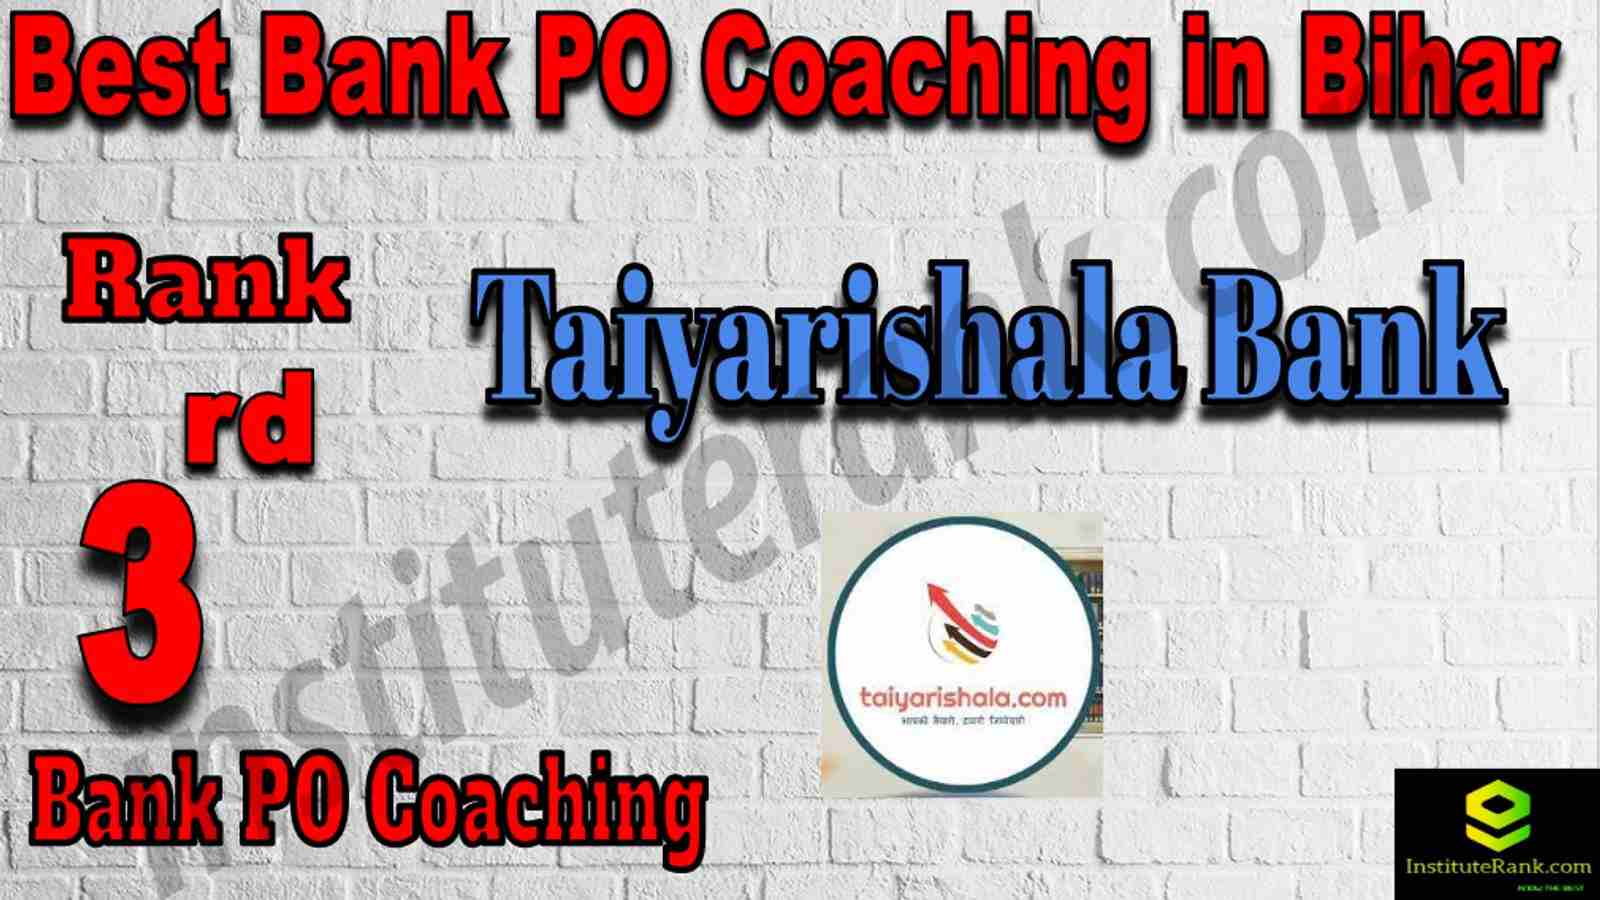 3rd Best Bank PO Coaching in Bihar